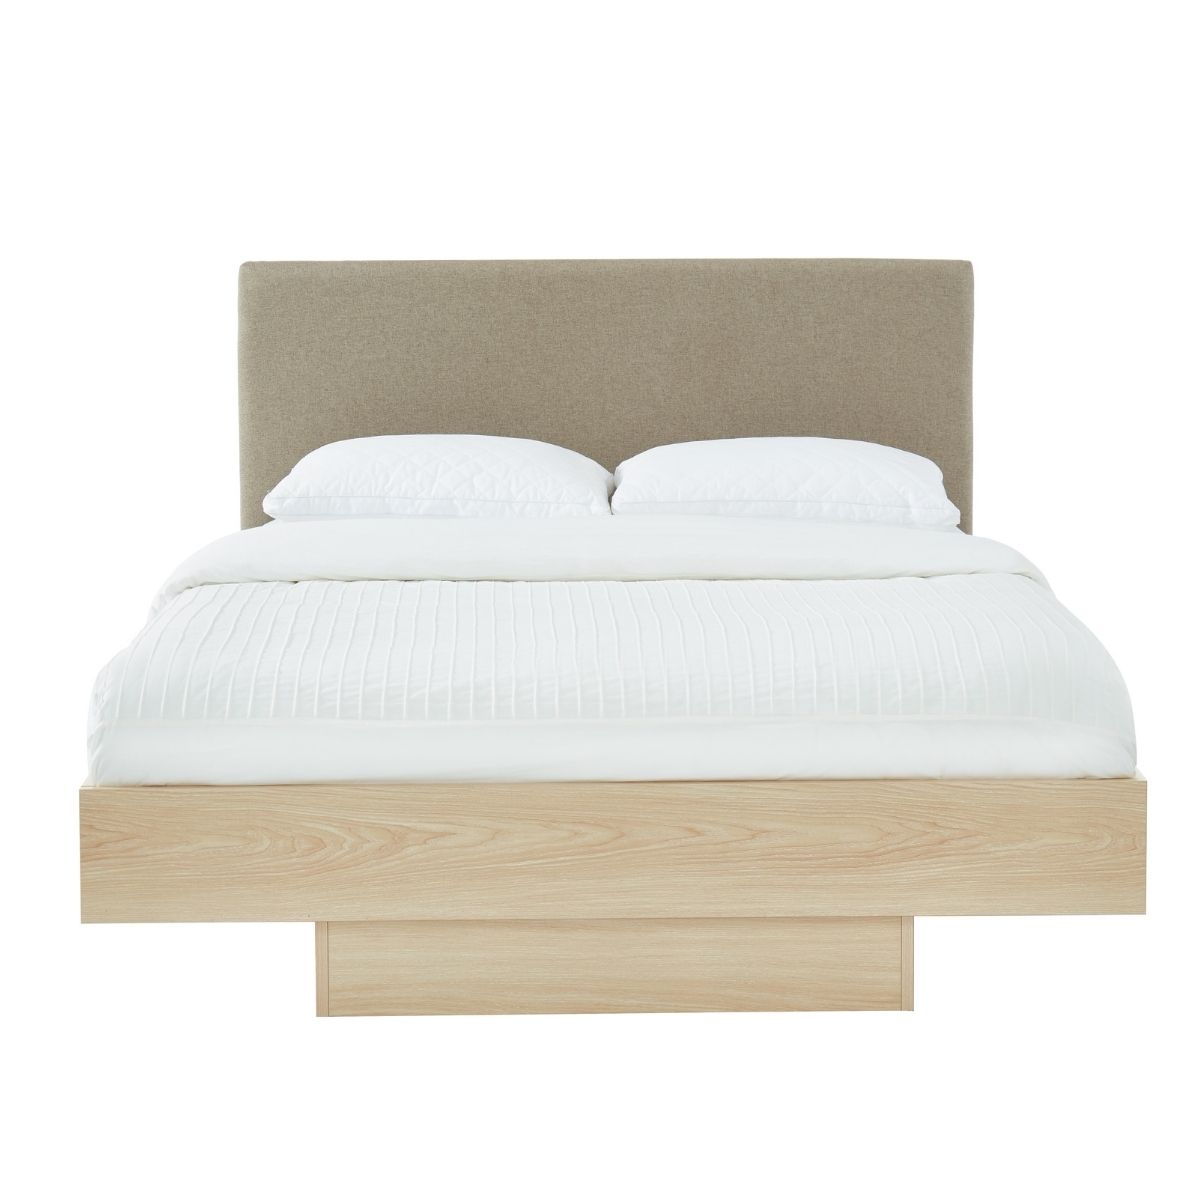 Natural Oak Wood Floating Bed Frame King - ozily